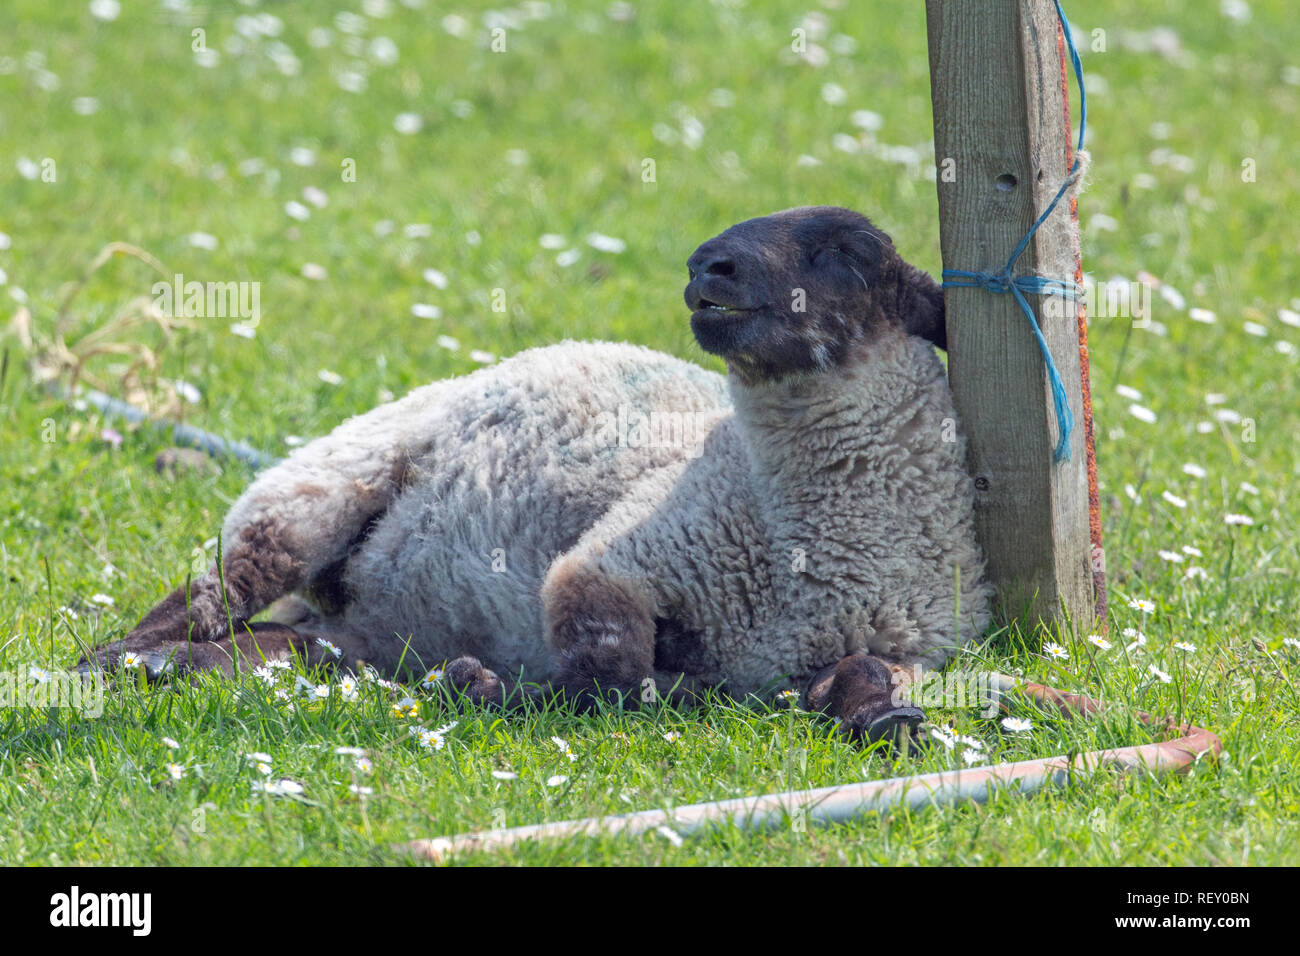 ​Sheep (Ovis aries), che soffrono di eccezionalmente alta di stress da calore e la mancanza di copertura, o ombra disponibilità in un campo aperto situazione. Inclinazione e puntellato contro una recinzione ridondante post. Foto Stock